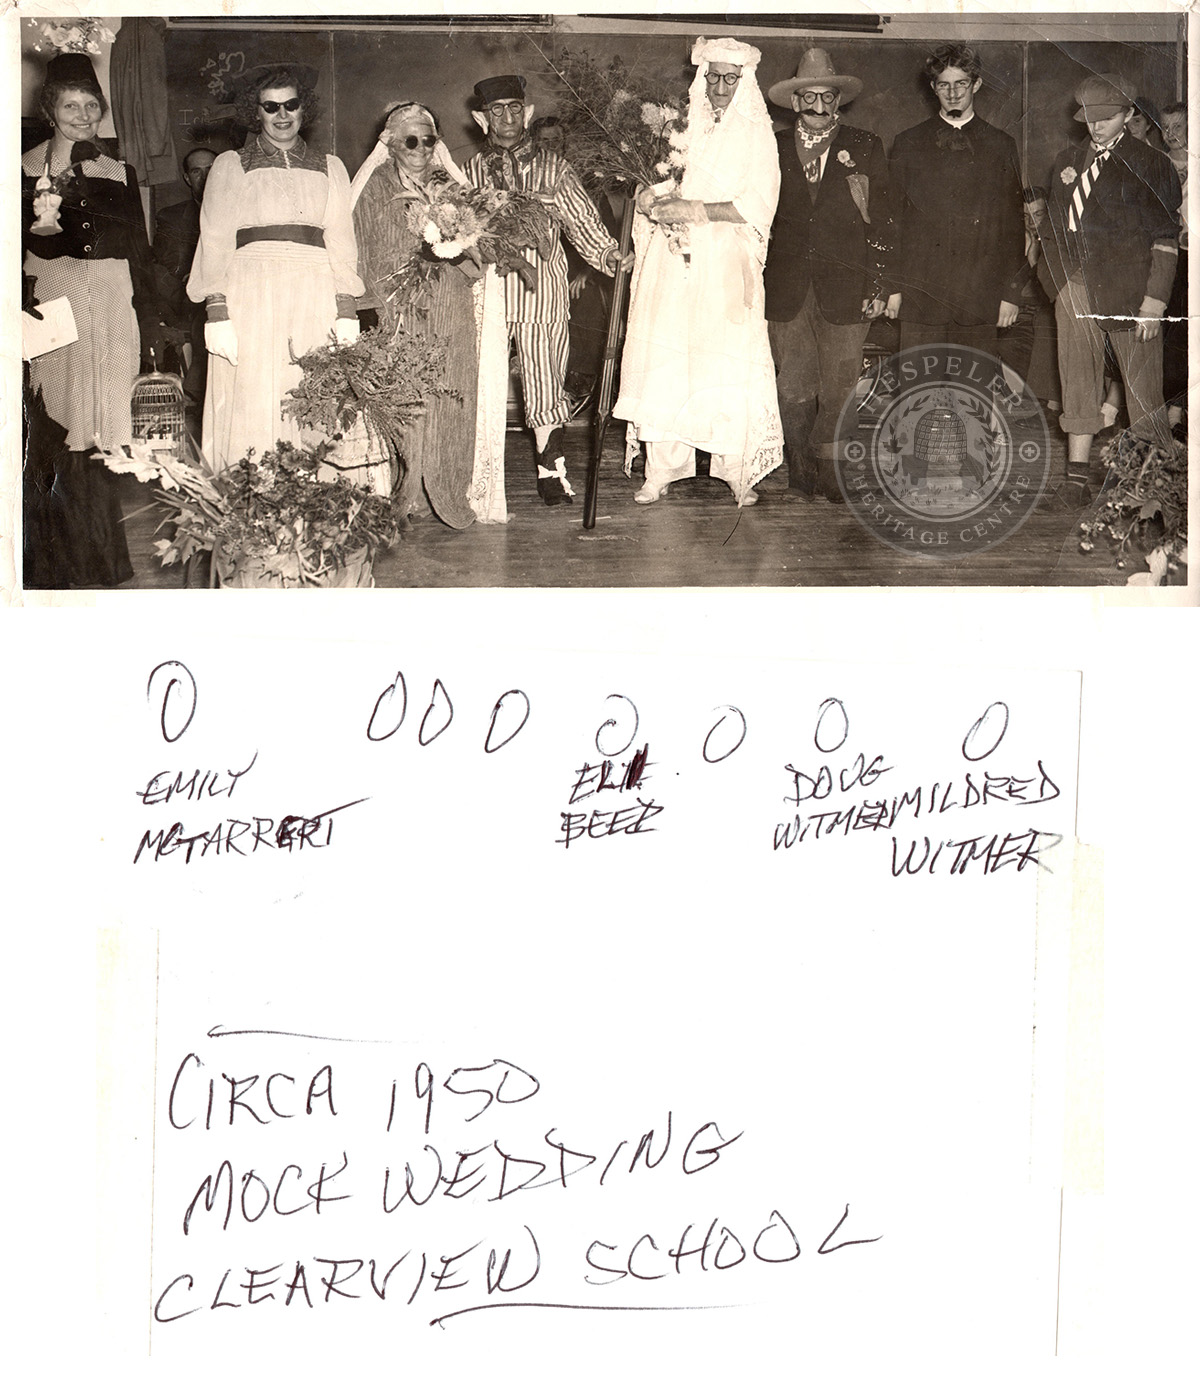 Clearview School c. 1950 mock wedding